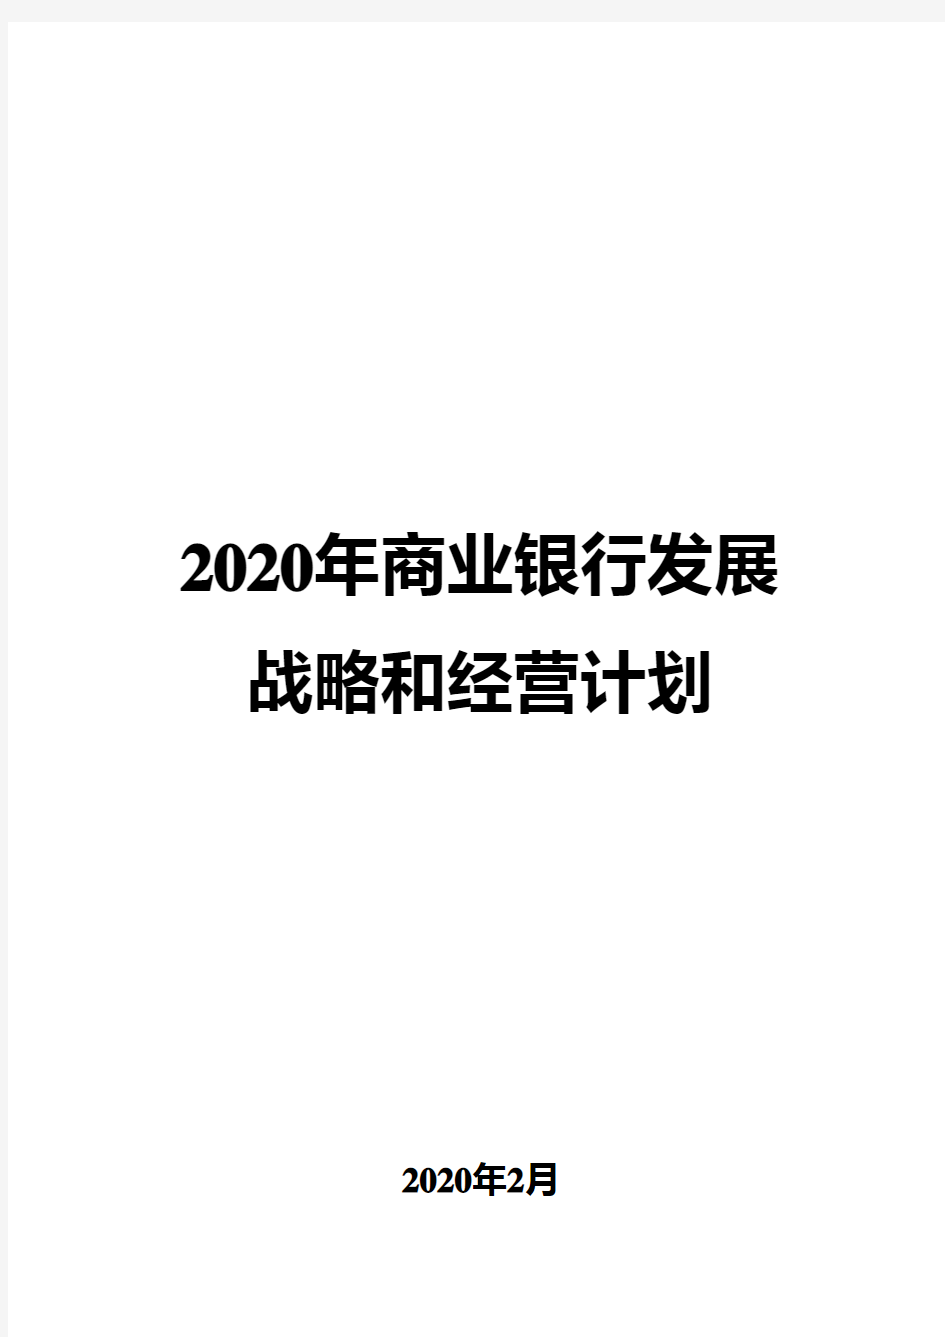 2020年商业银行发展战略和经营计划